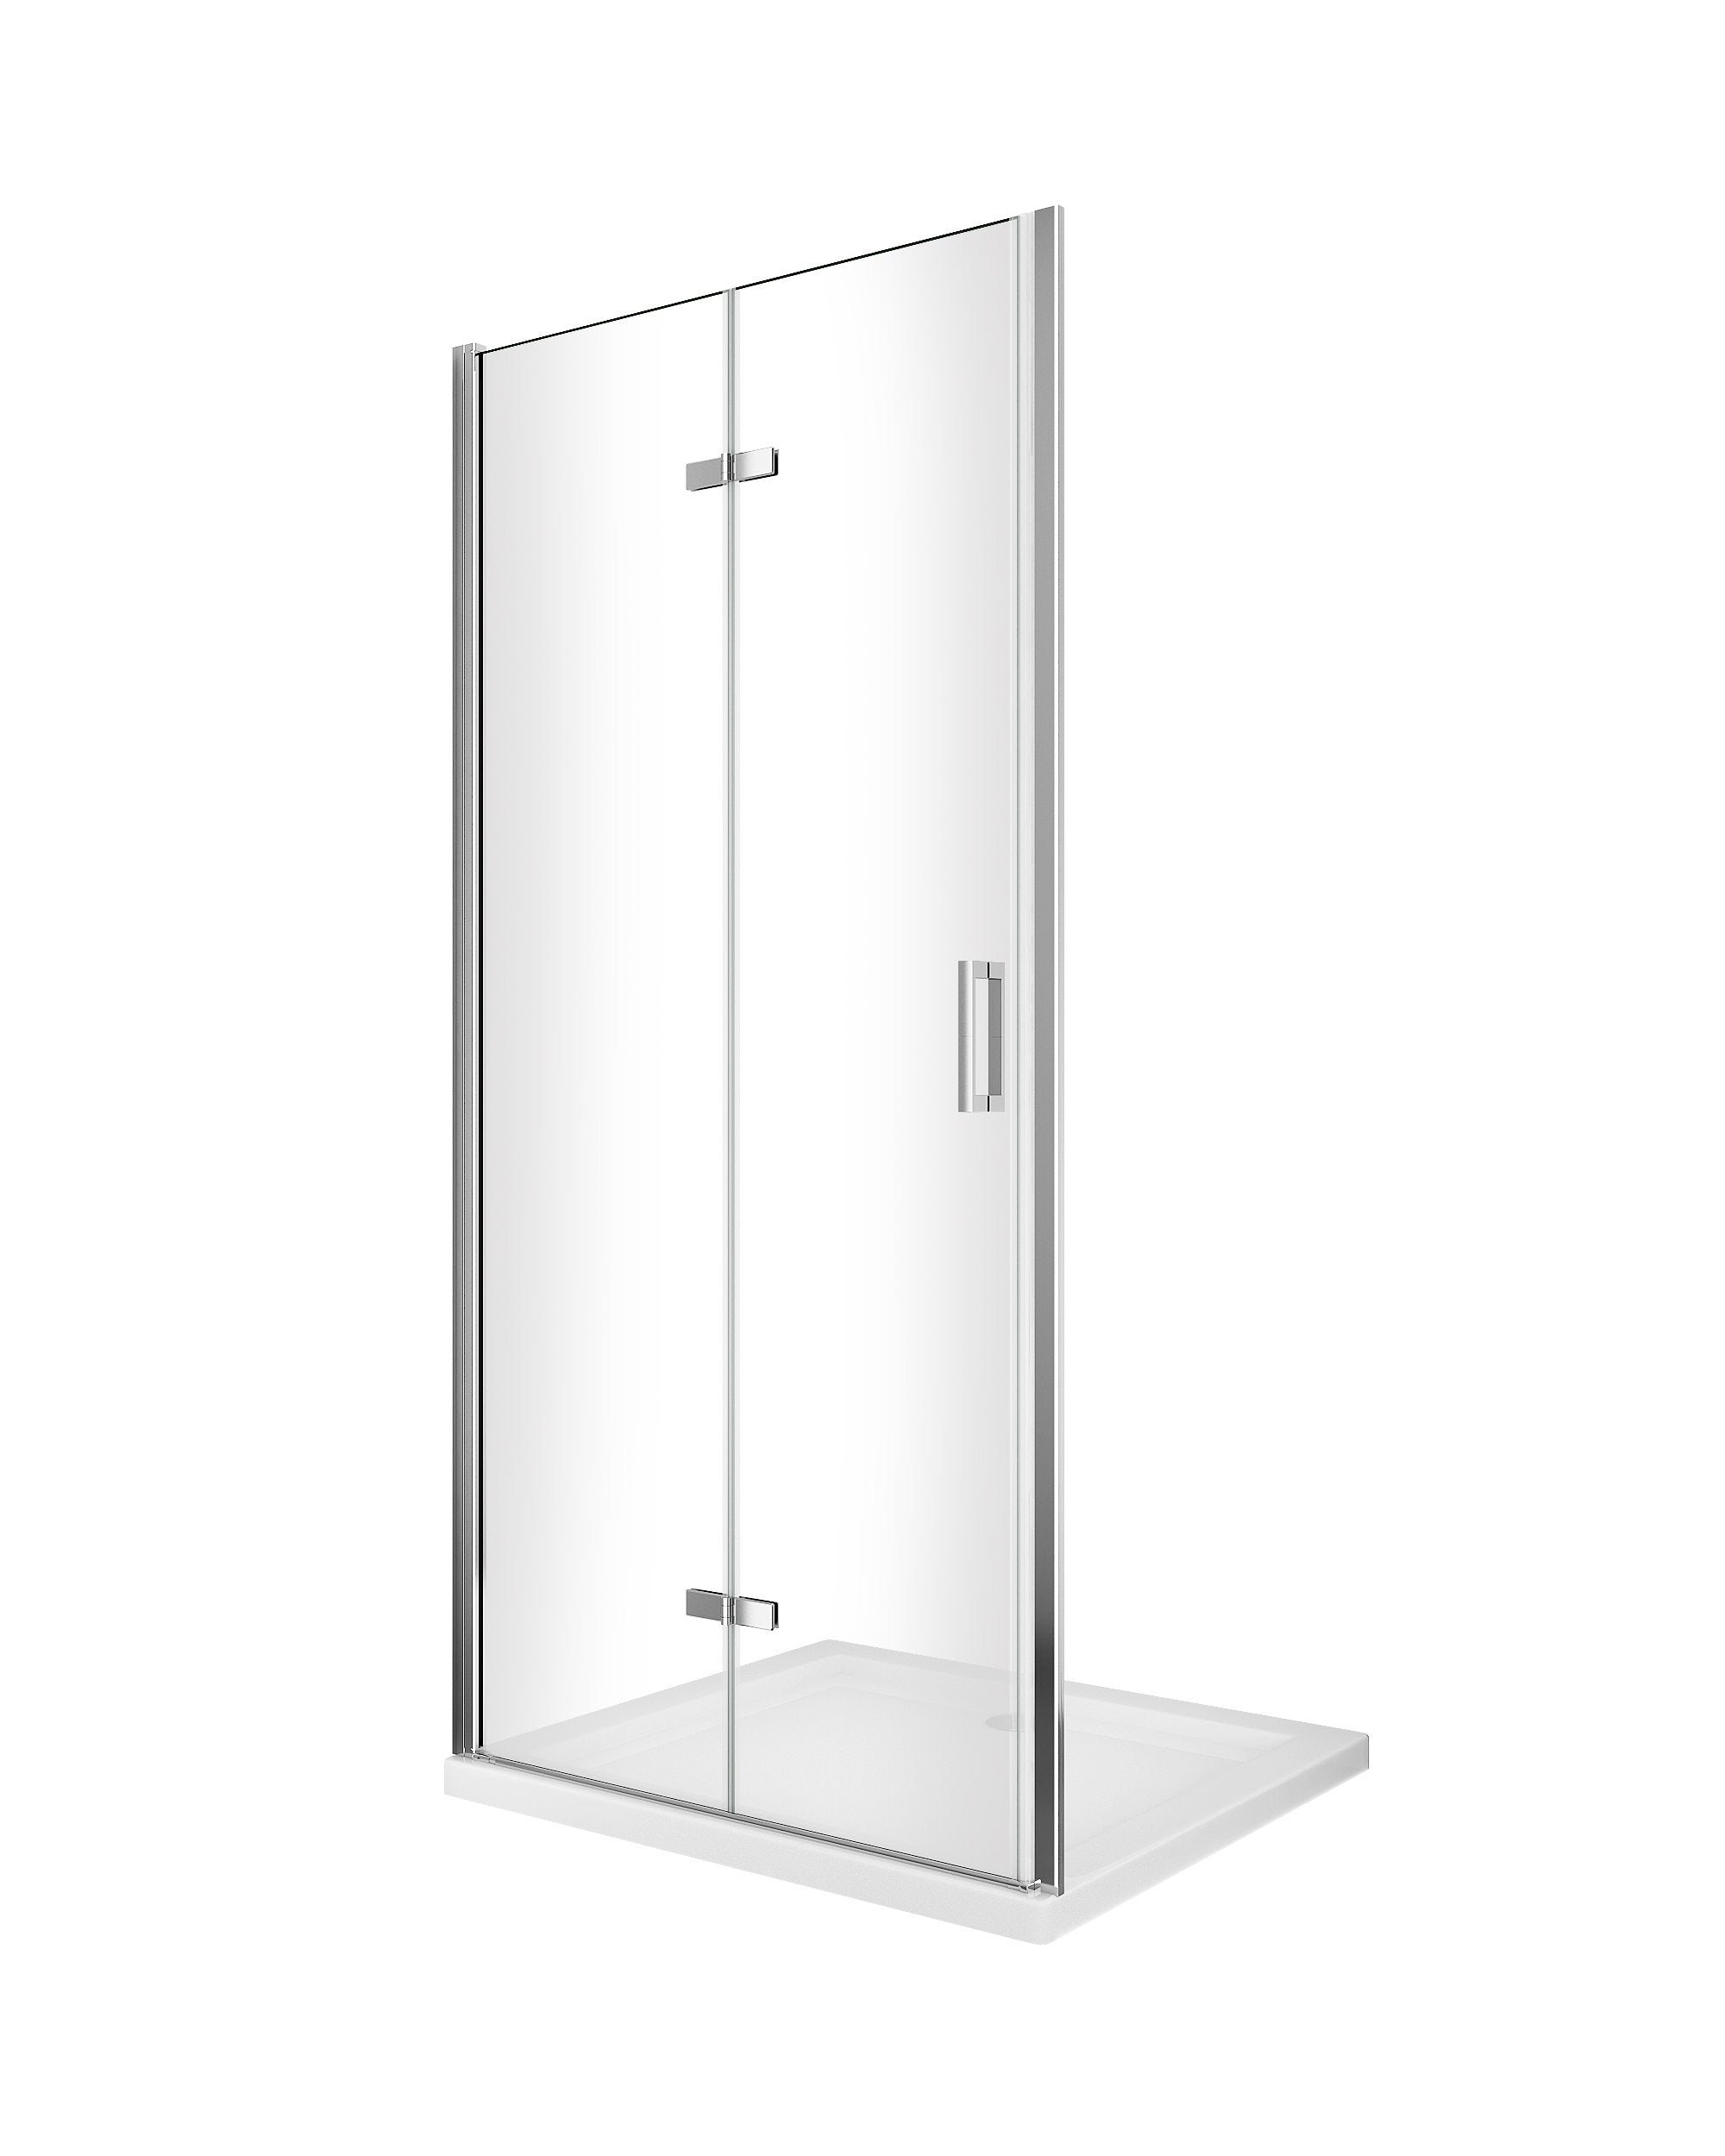 Porta box doccia con apertura a libro pieghevole a soffietto per installazione in nicchia H 190 cromo trasparente anticalcare misura 63-66,5